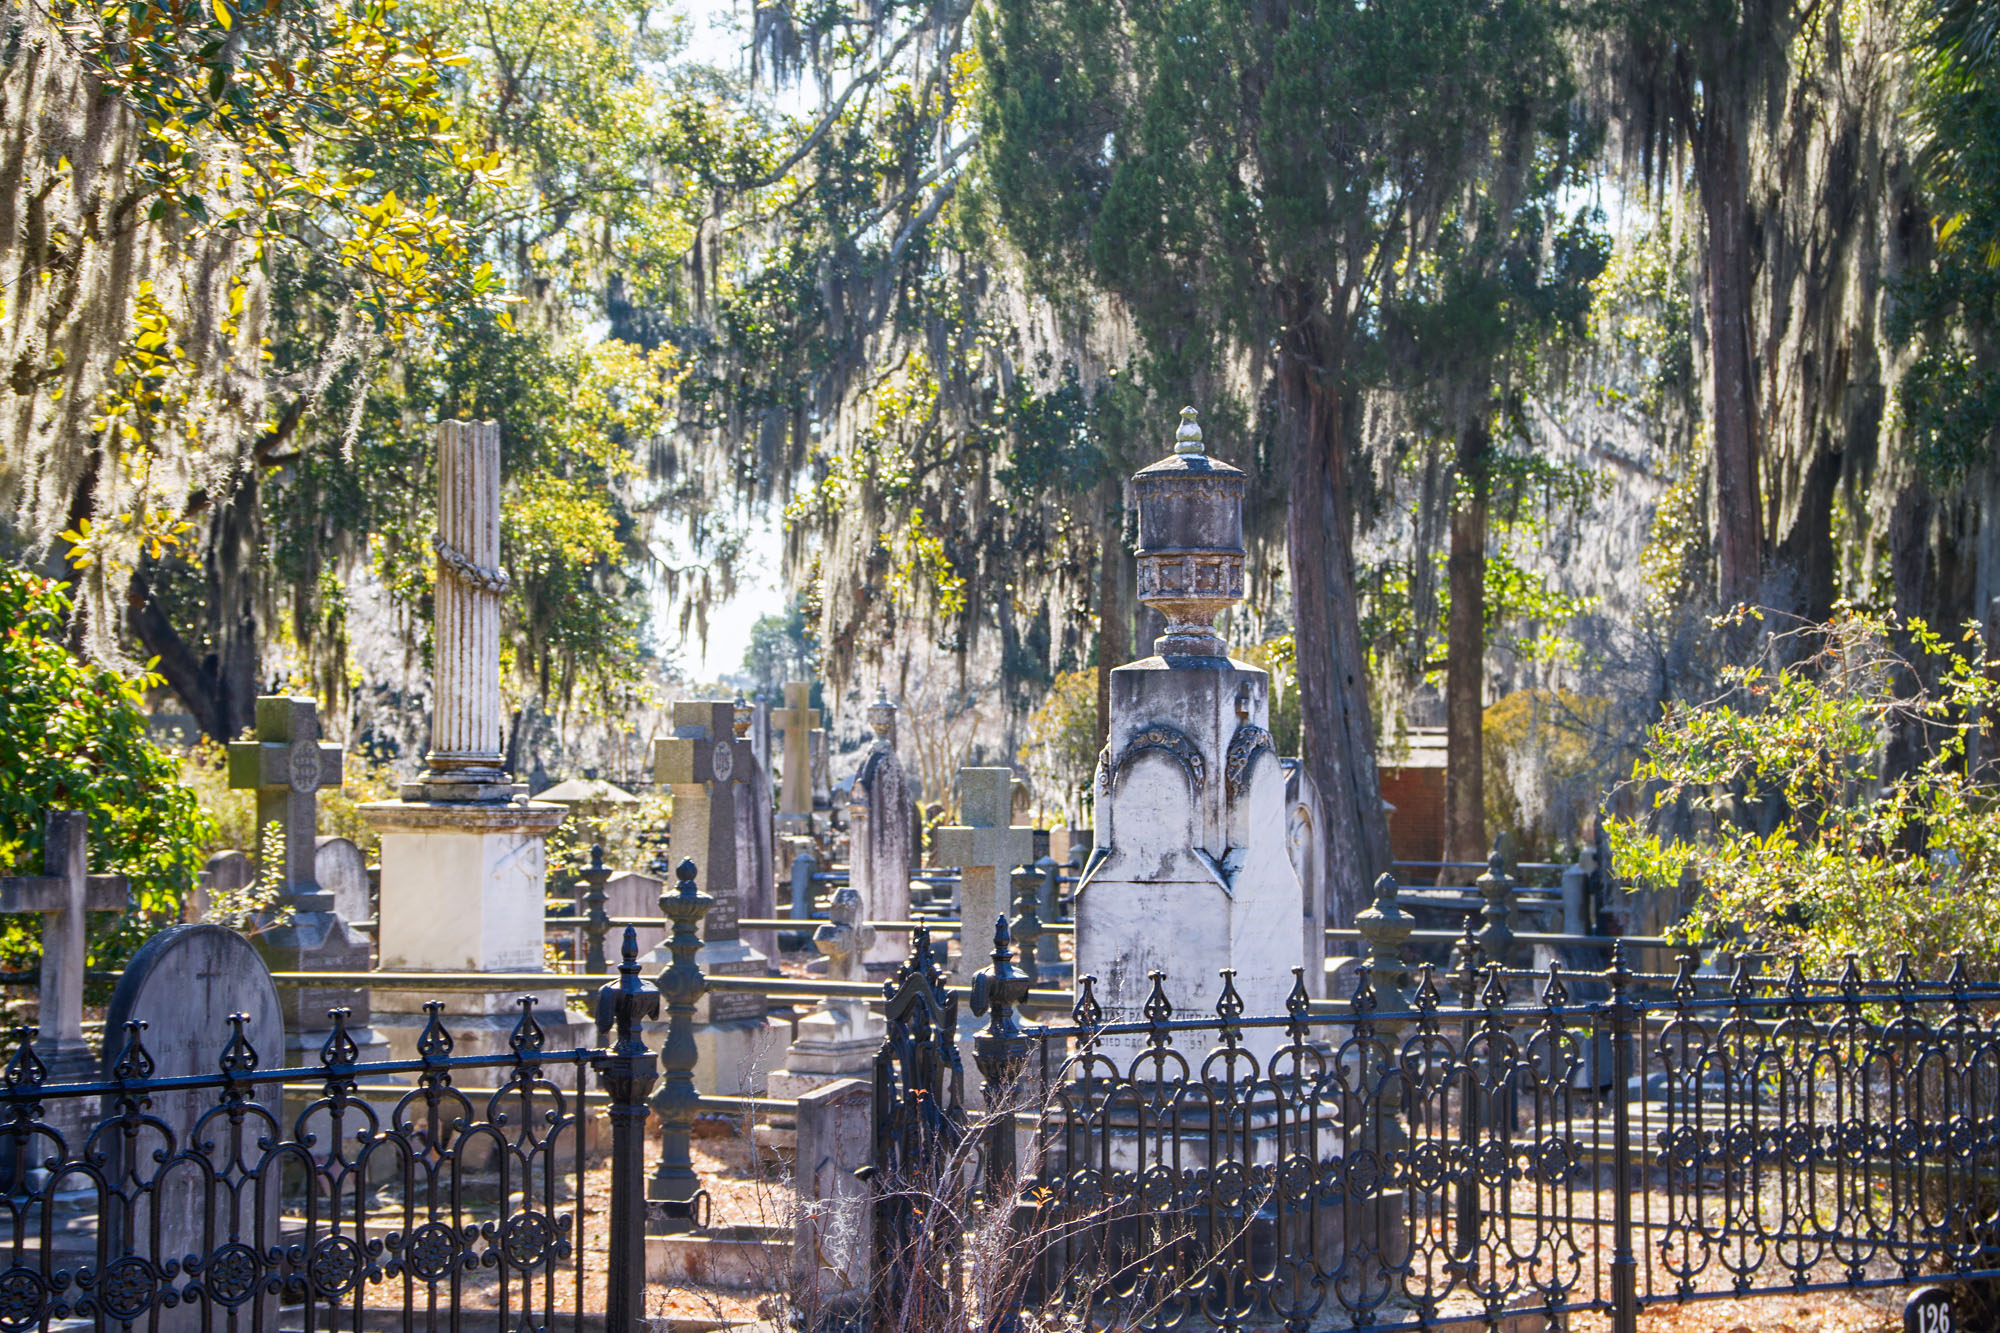 USA south cemetery